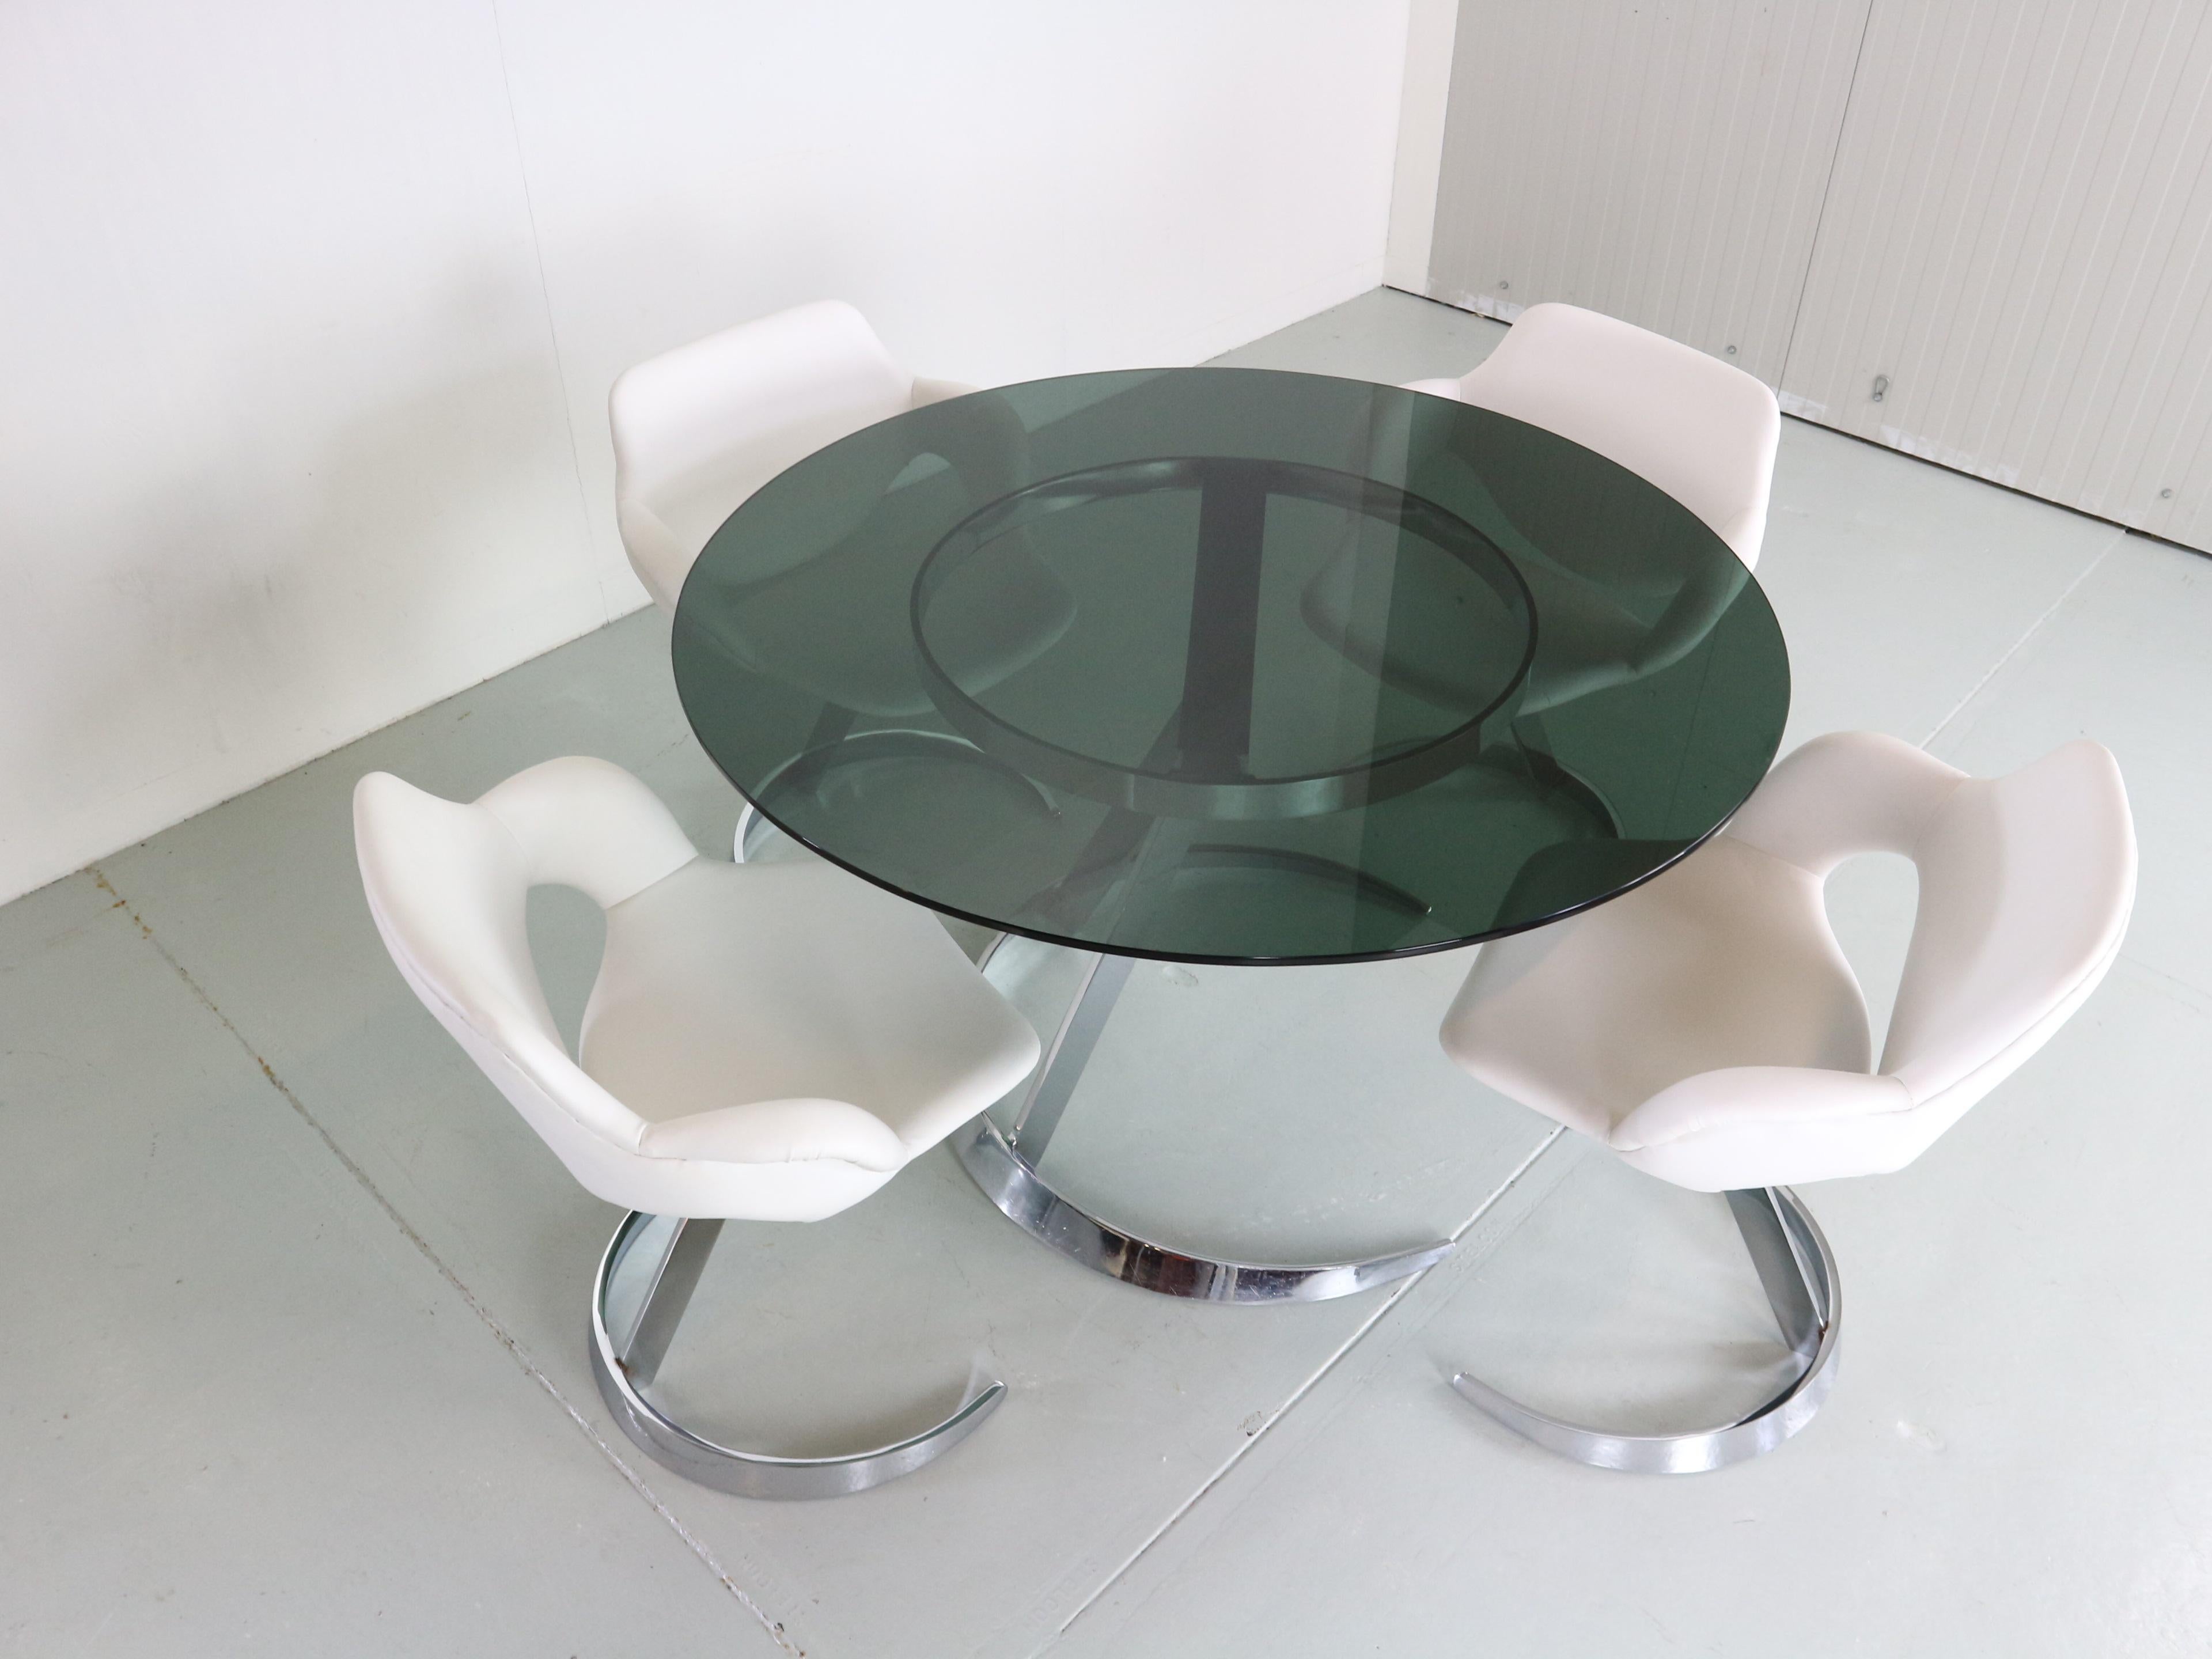 Ensemble de salle à manger d'époque NO AGE conçu par Boris Tabacoff et fabriqué pour Mobilier Modulair Moderne dans les années 1970, circa period, France.

L'ensemble se compose d'une table ronde et de 4 chaises assorties.
La table ronde repose sur